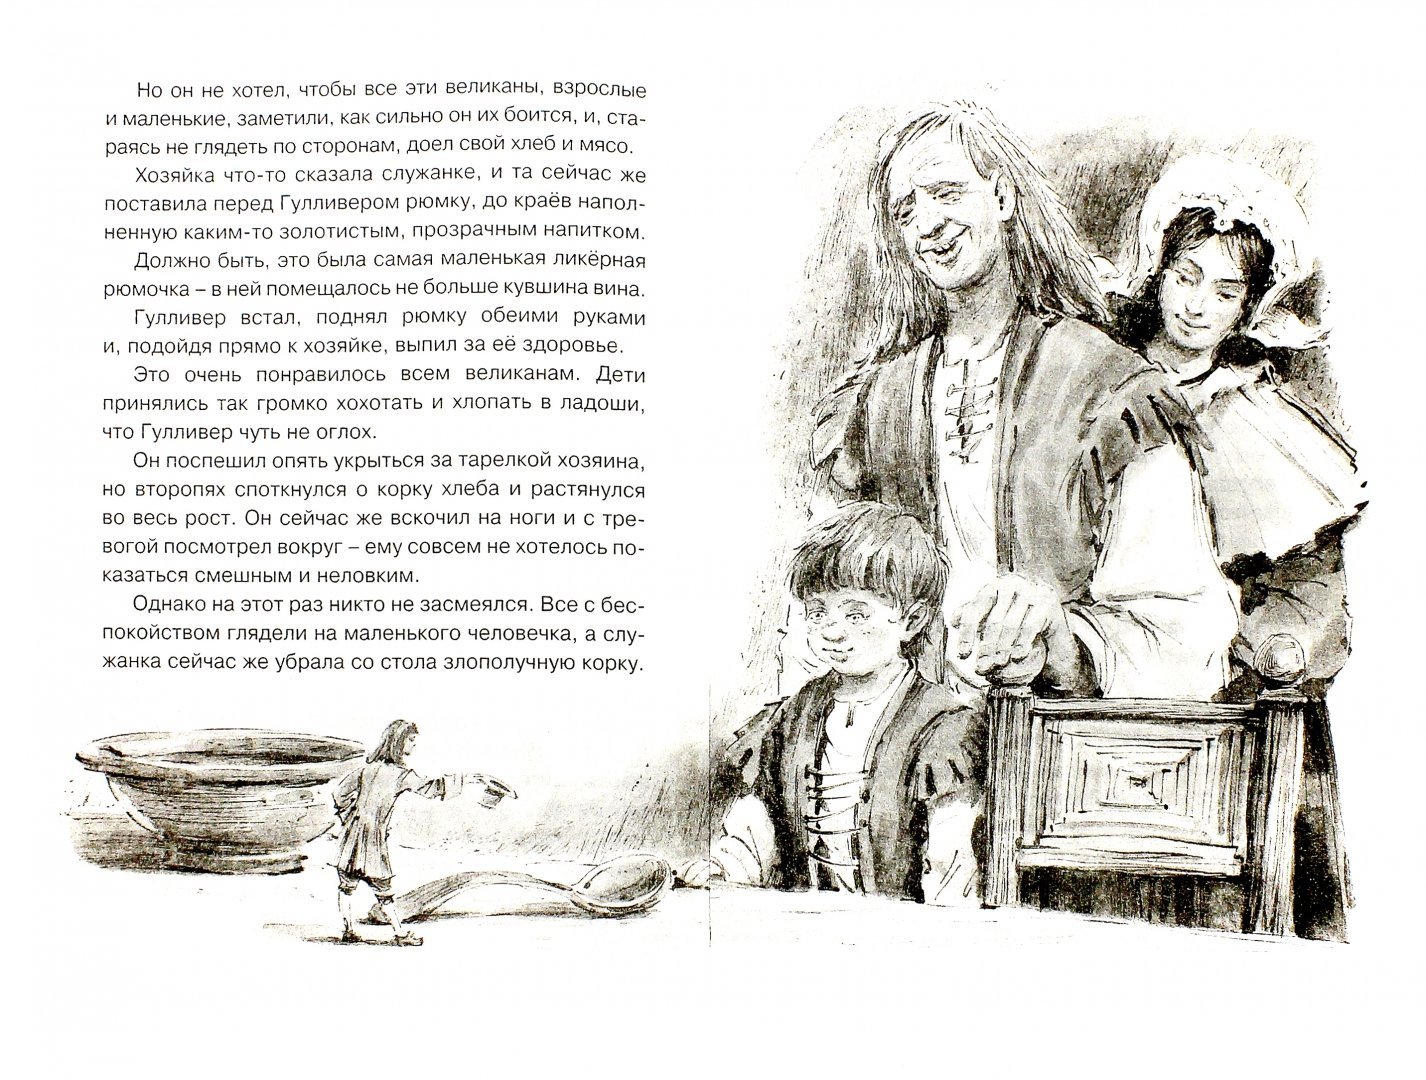 Чего ждали человечки когда гулливер поел. Иллюстрации д. Свифта "путешествие Гулливера". Иллюстрации к книге путешествие Гулливера. Джонатан Свифт иллюстрации к книге путешествие Гулливера.